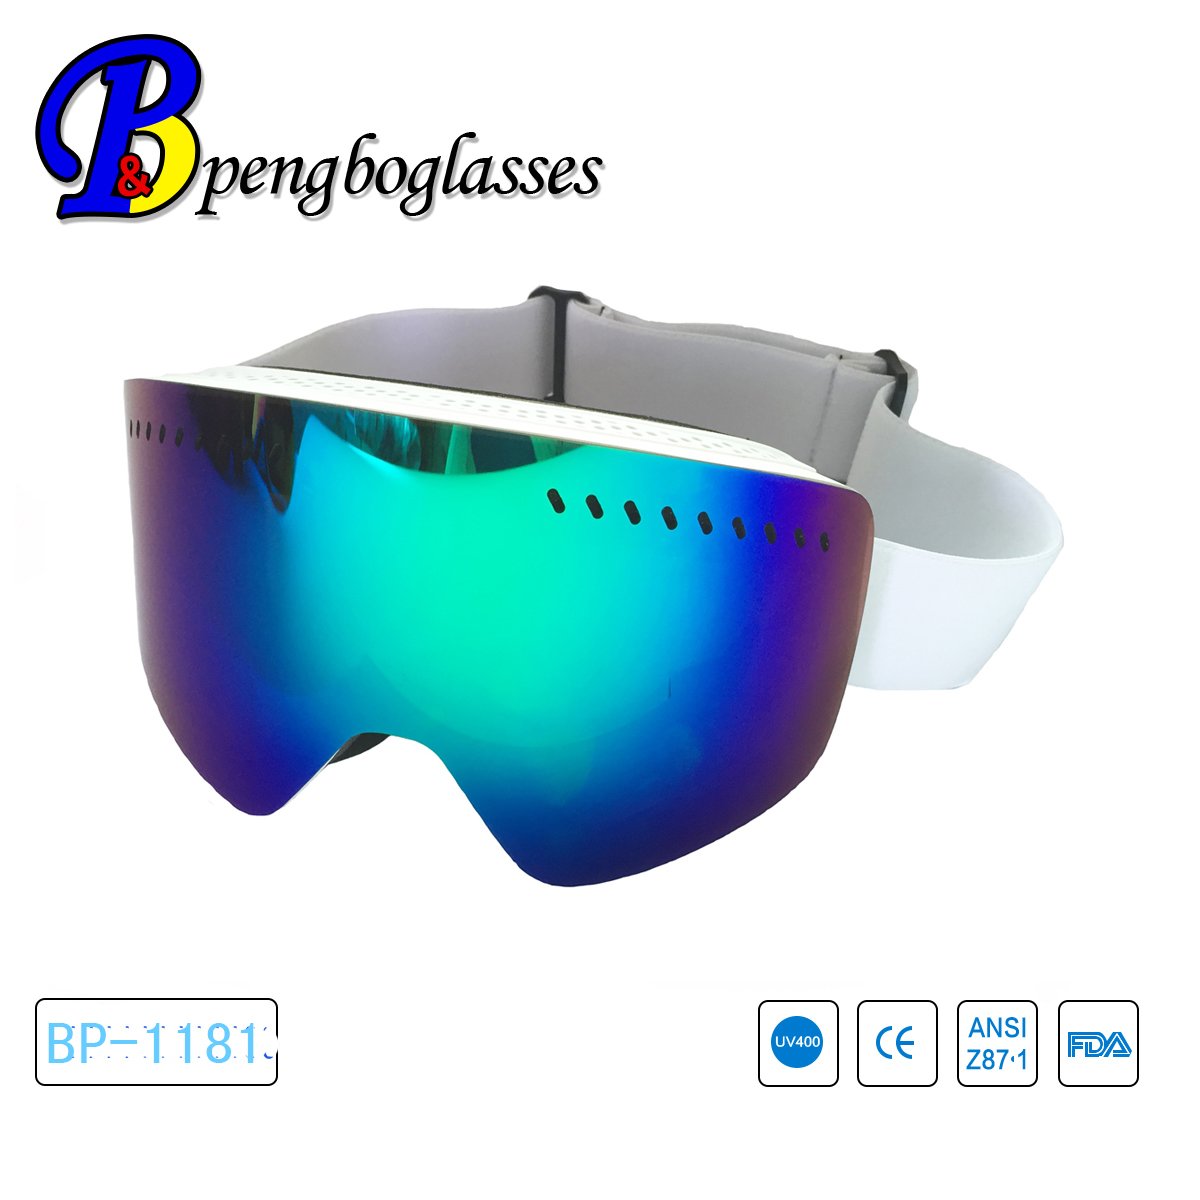 新款冬季**可自由拆换双层大球面滑雪眼镜 带通风透气孔 护目镜